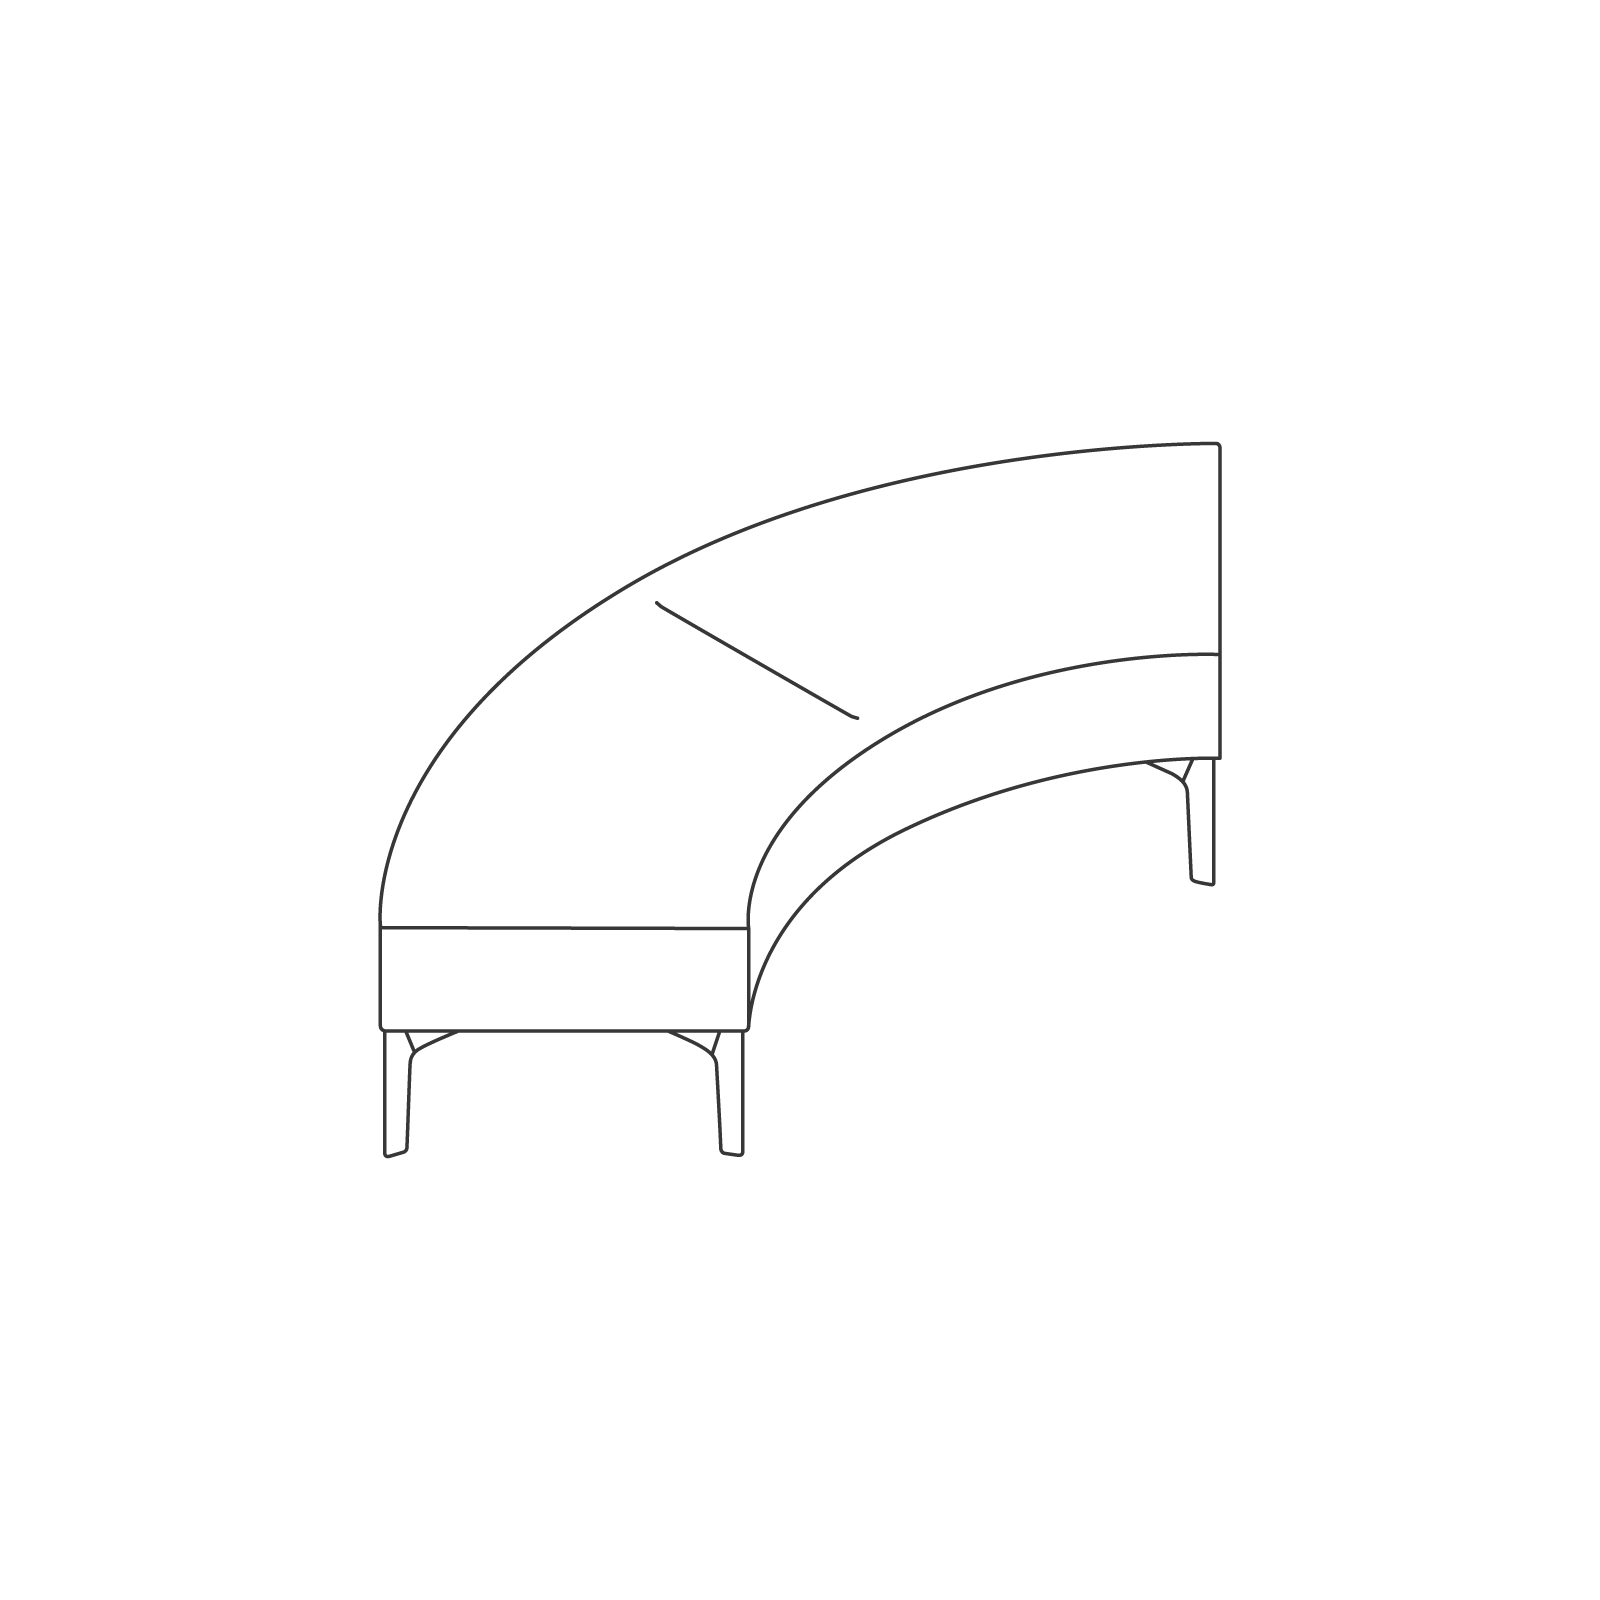 Um desenho de linha - Banco Symbol – Curva externa de 90°